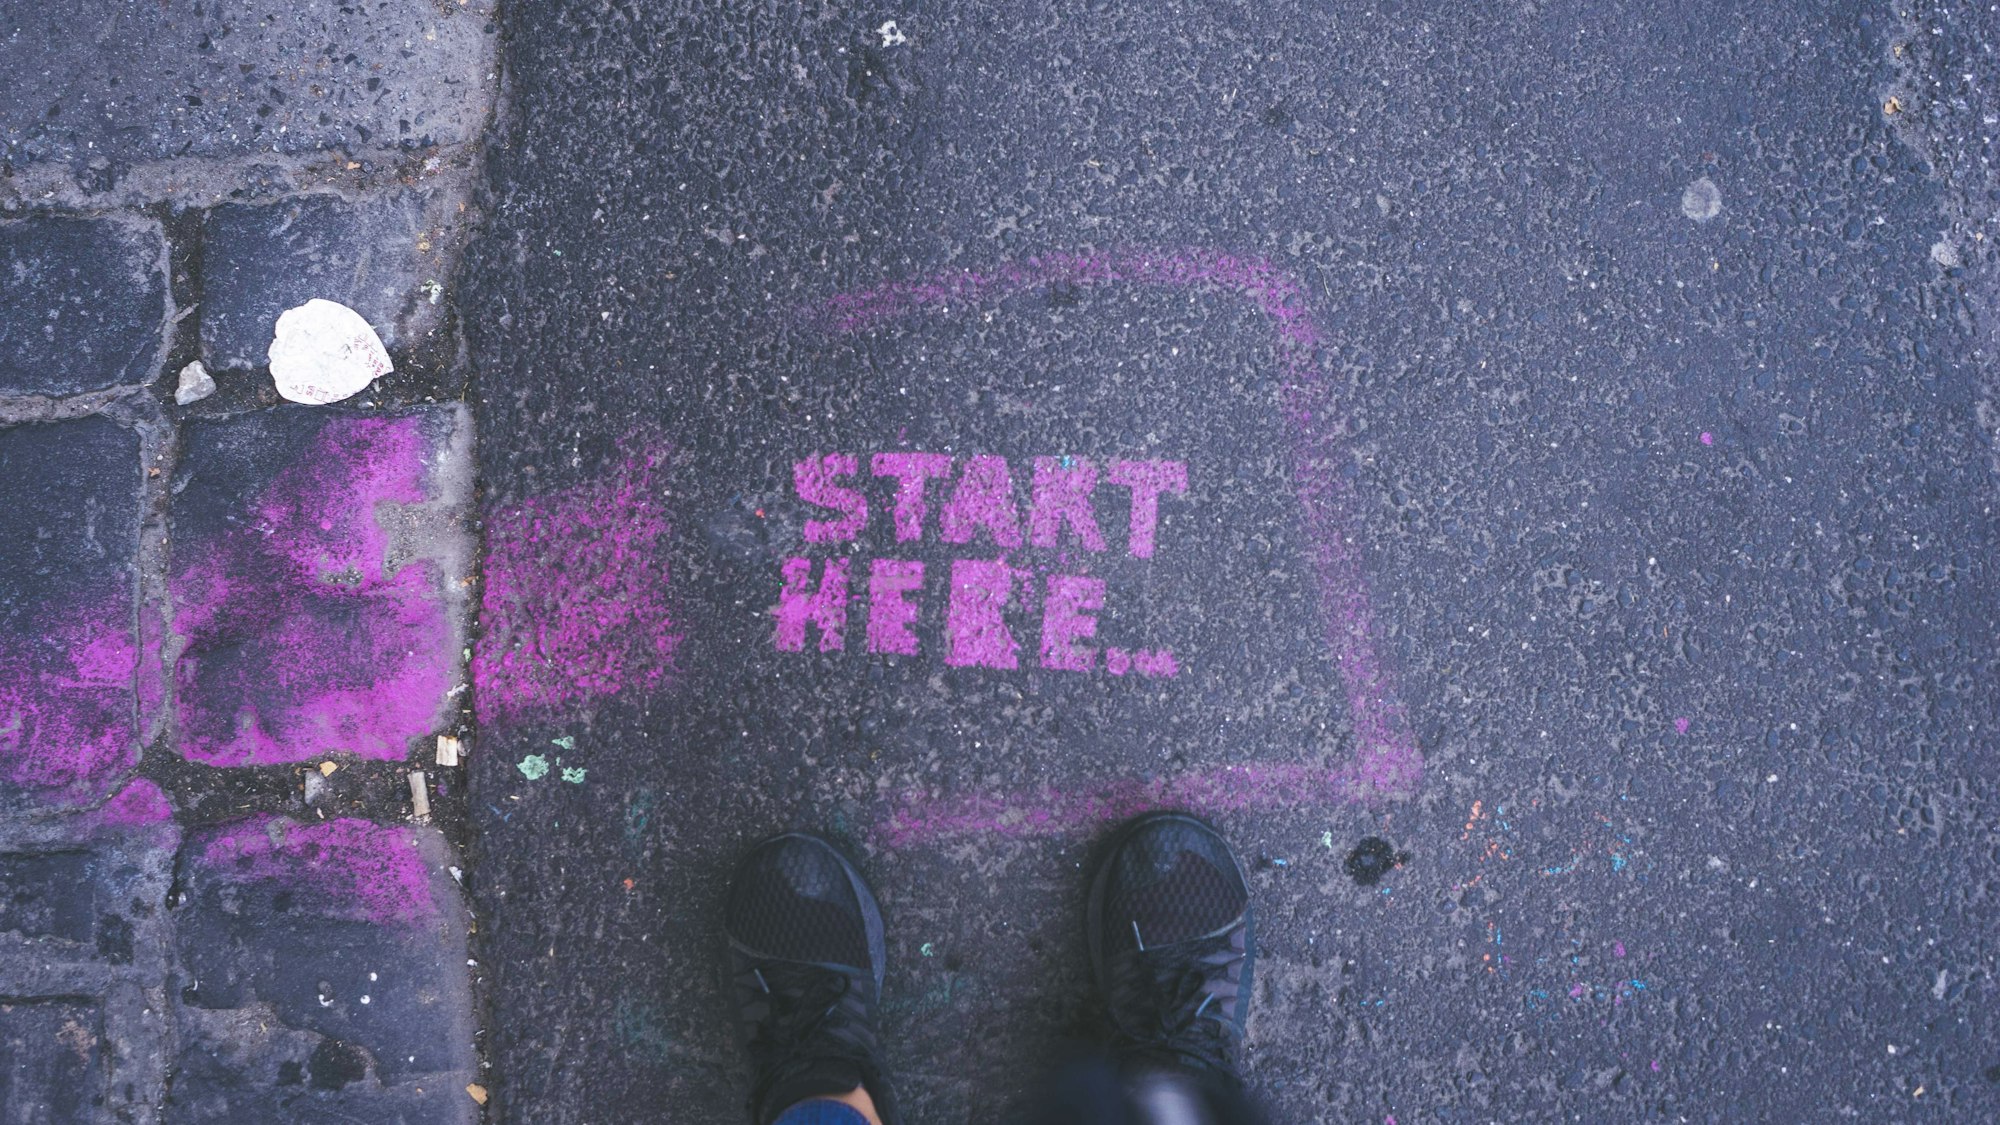 Start here...